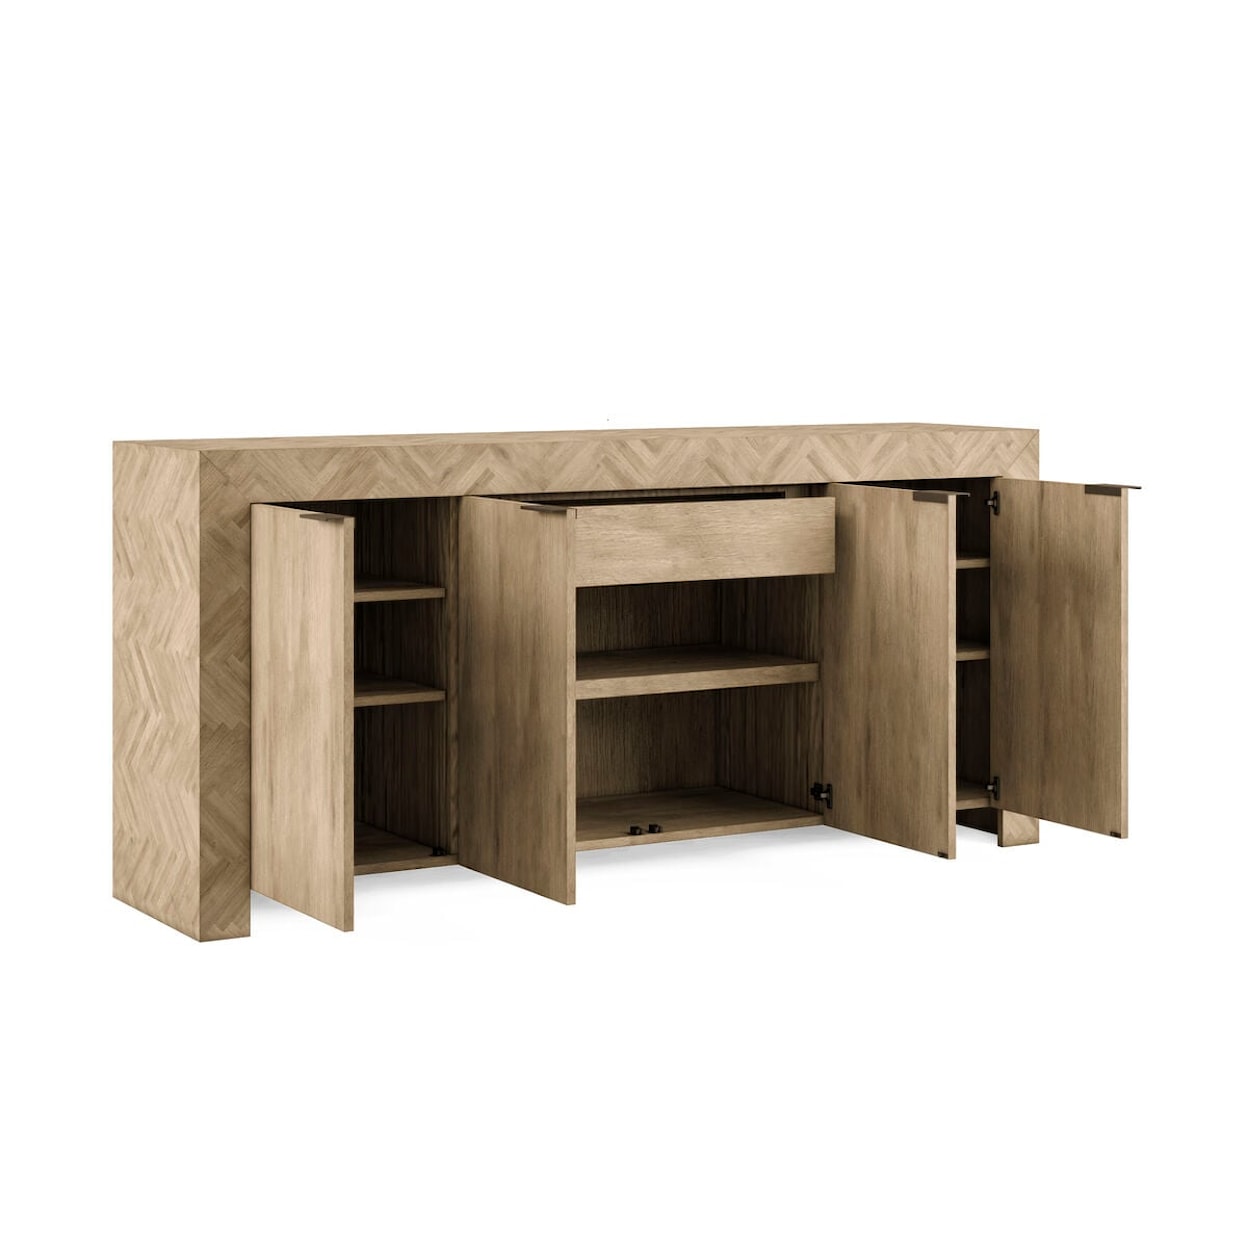 A.R.T. Furniture Inc 322 - Garrison Credenza